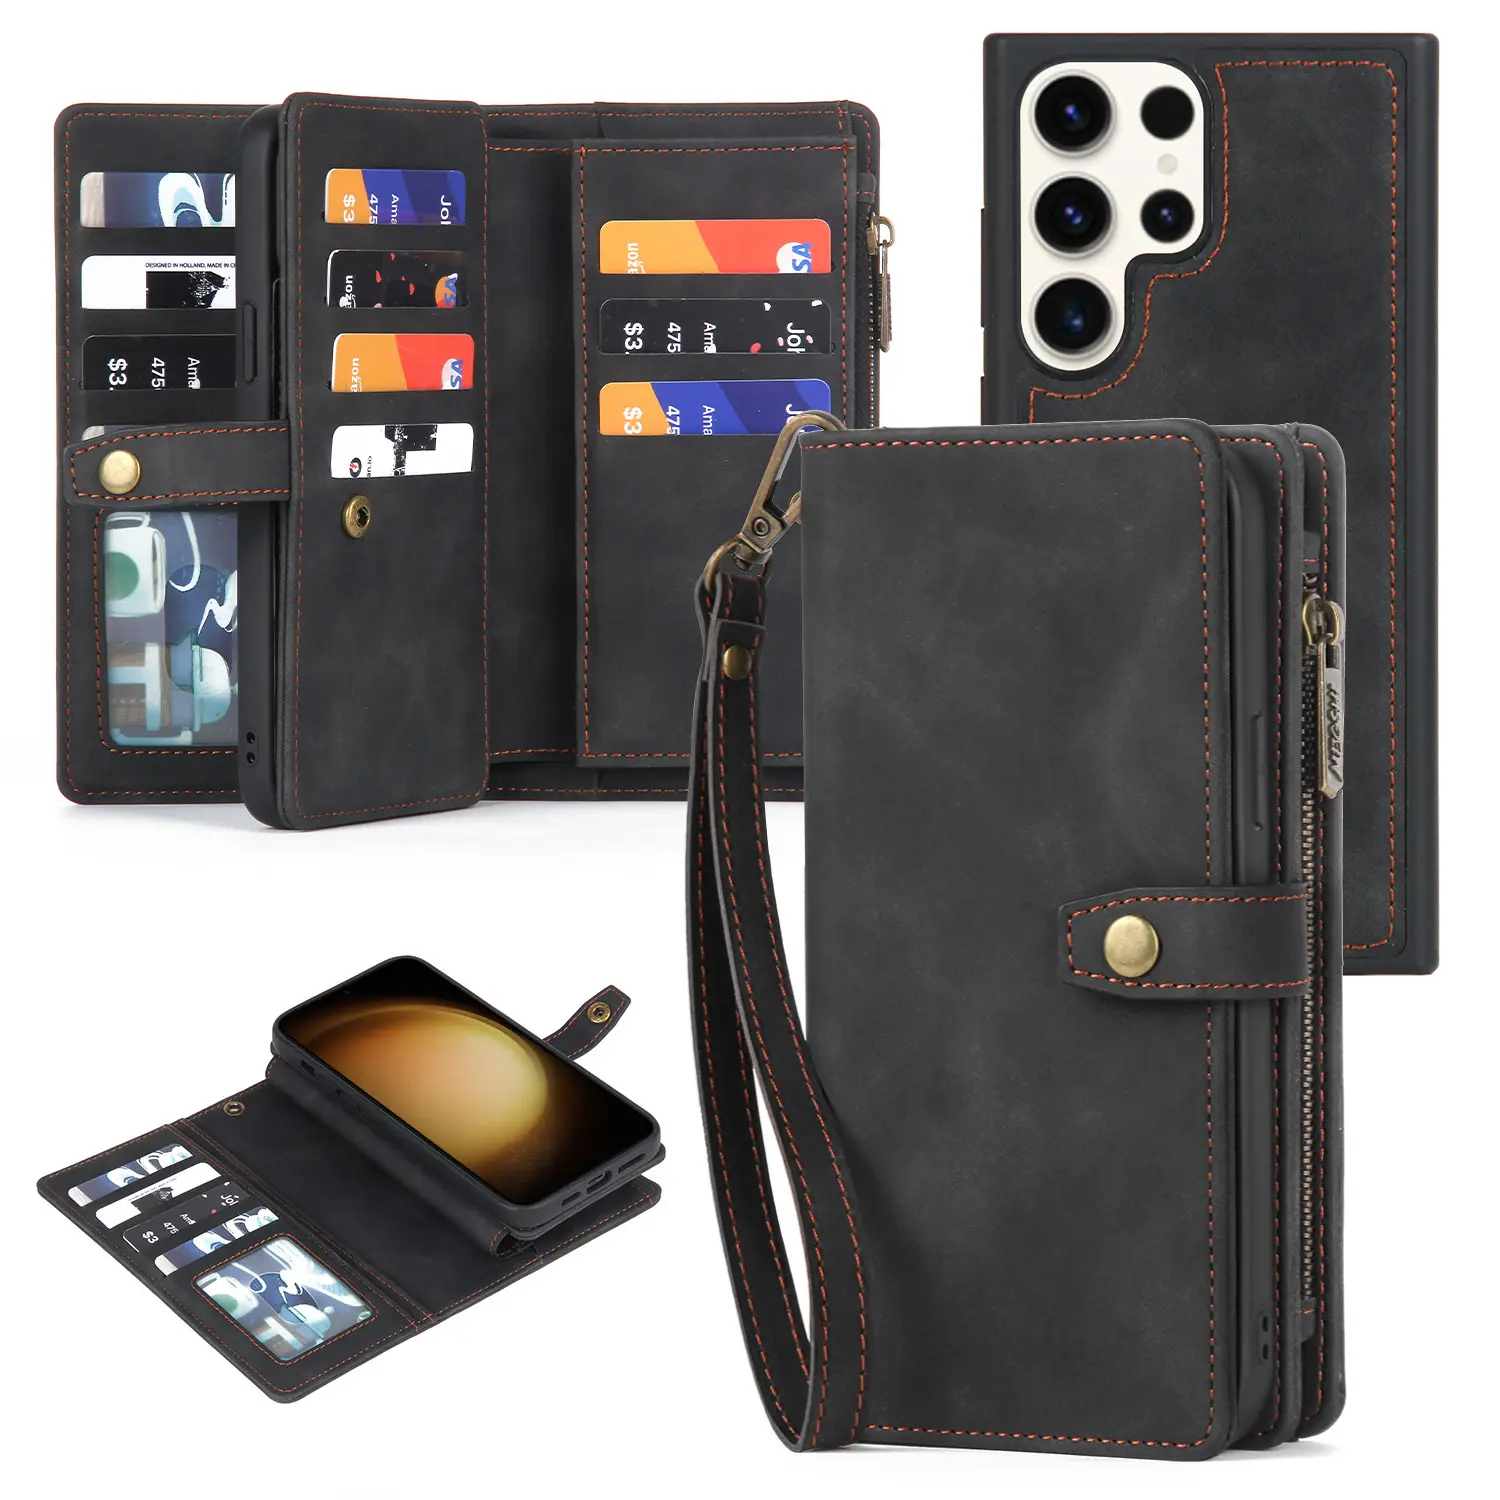 S23 siêu Wallet Trường hợp với RFID chặn chủ thẻ tín dụng Đối với Samsung S23 siêu PU Leather Bìa